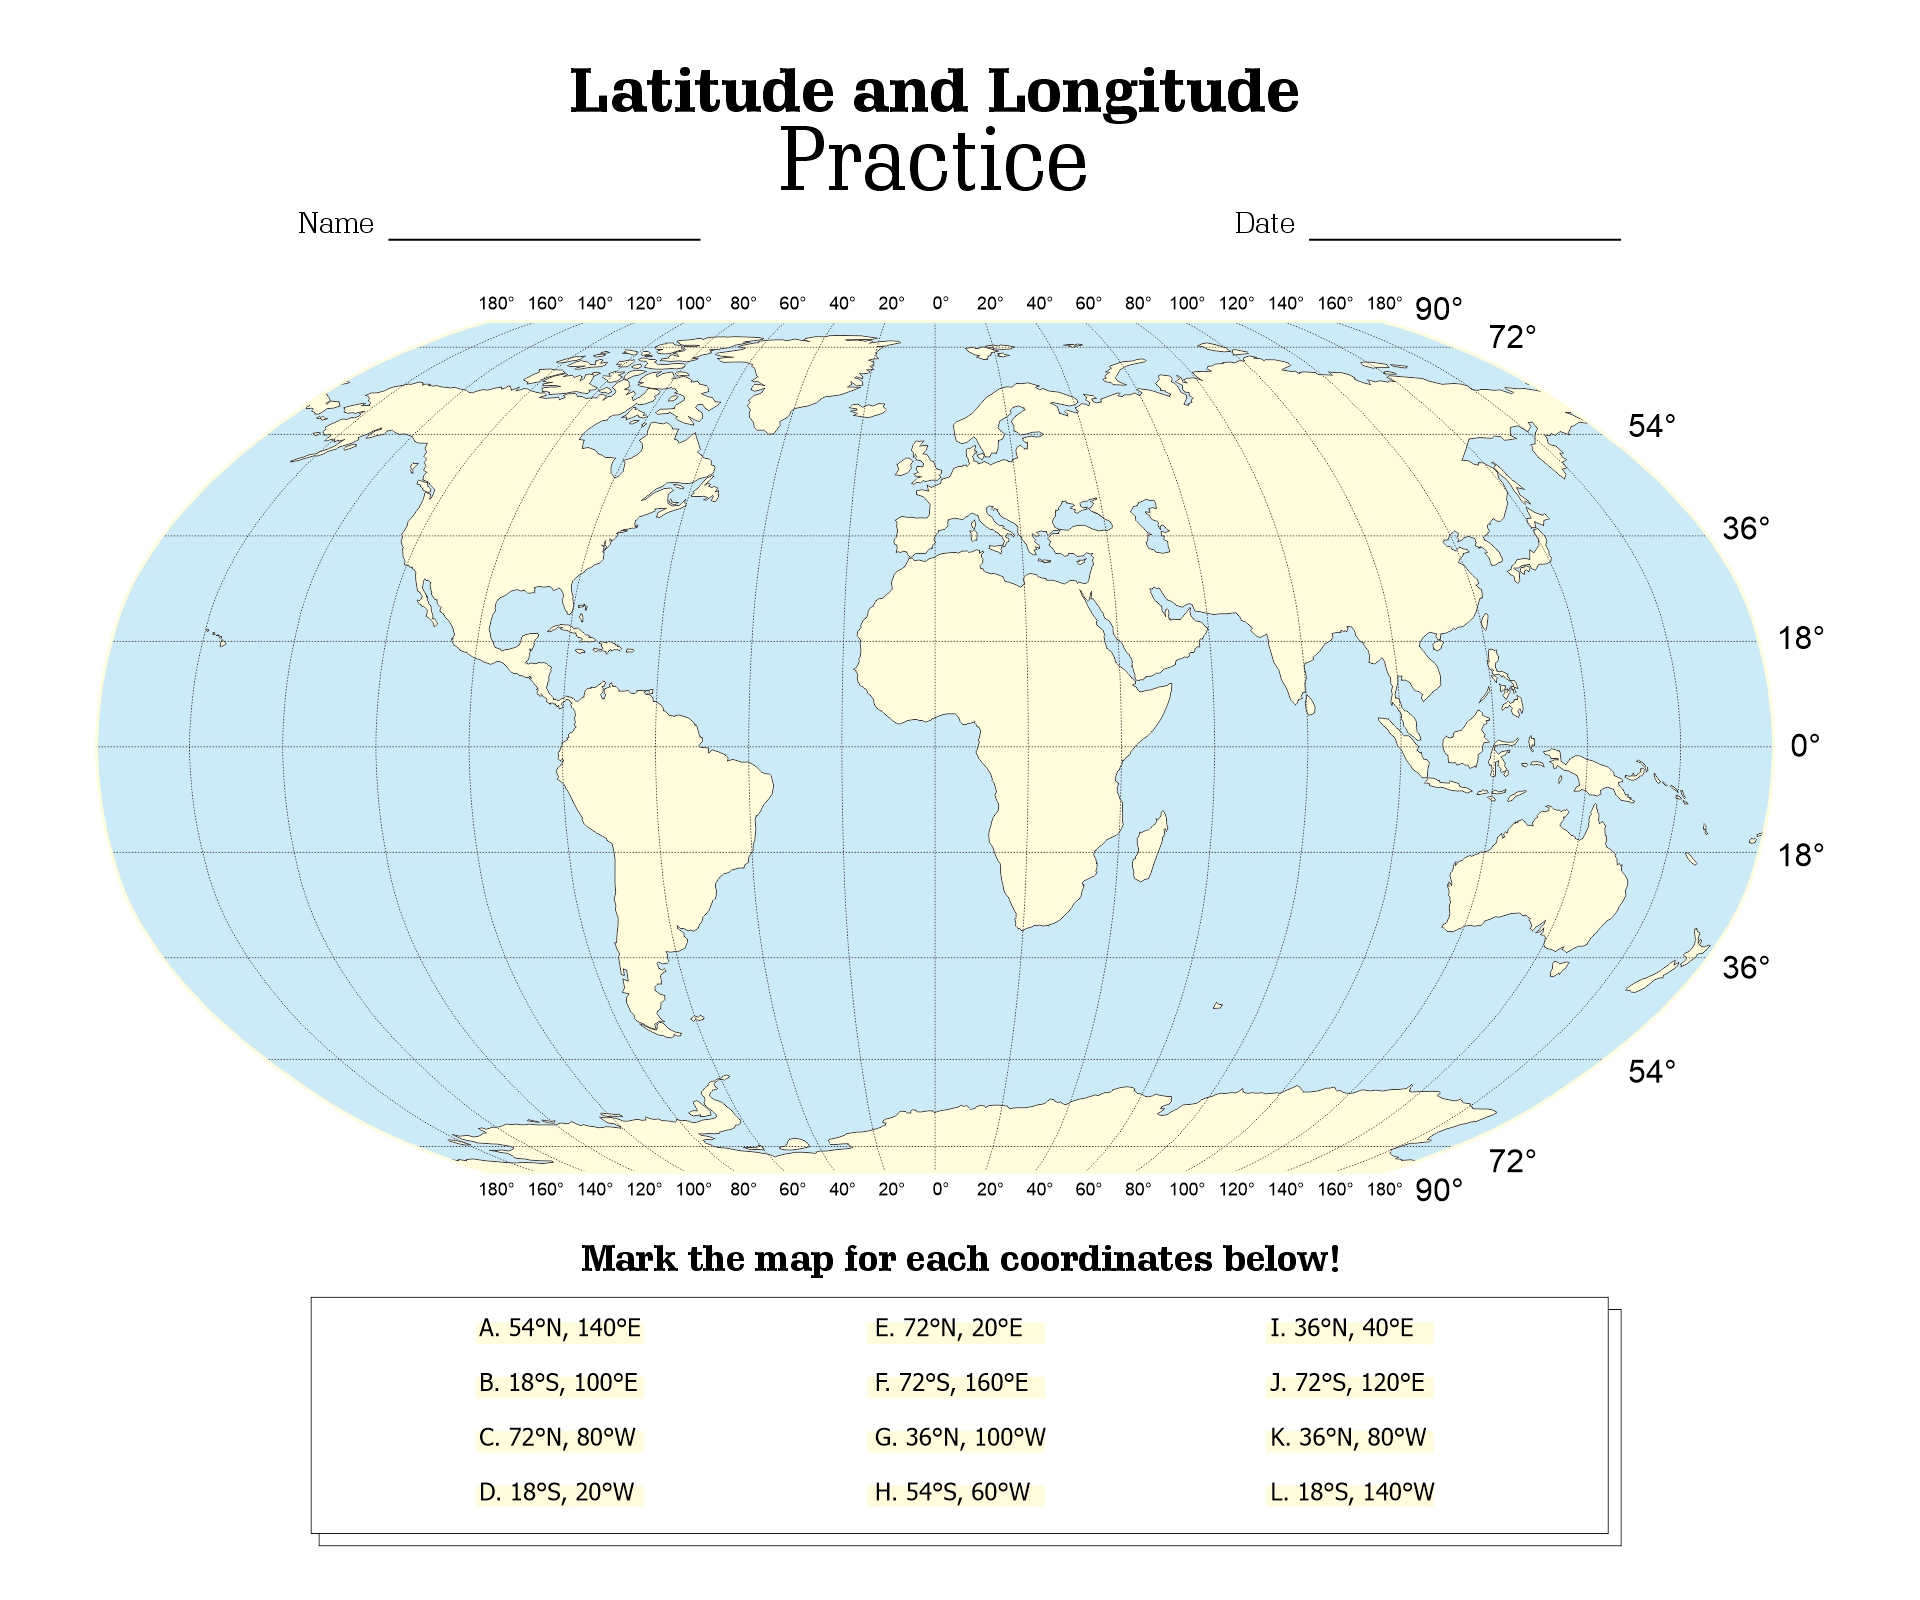 Longitude and Latitude Worksheets Image